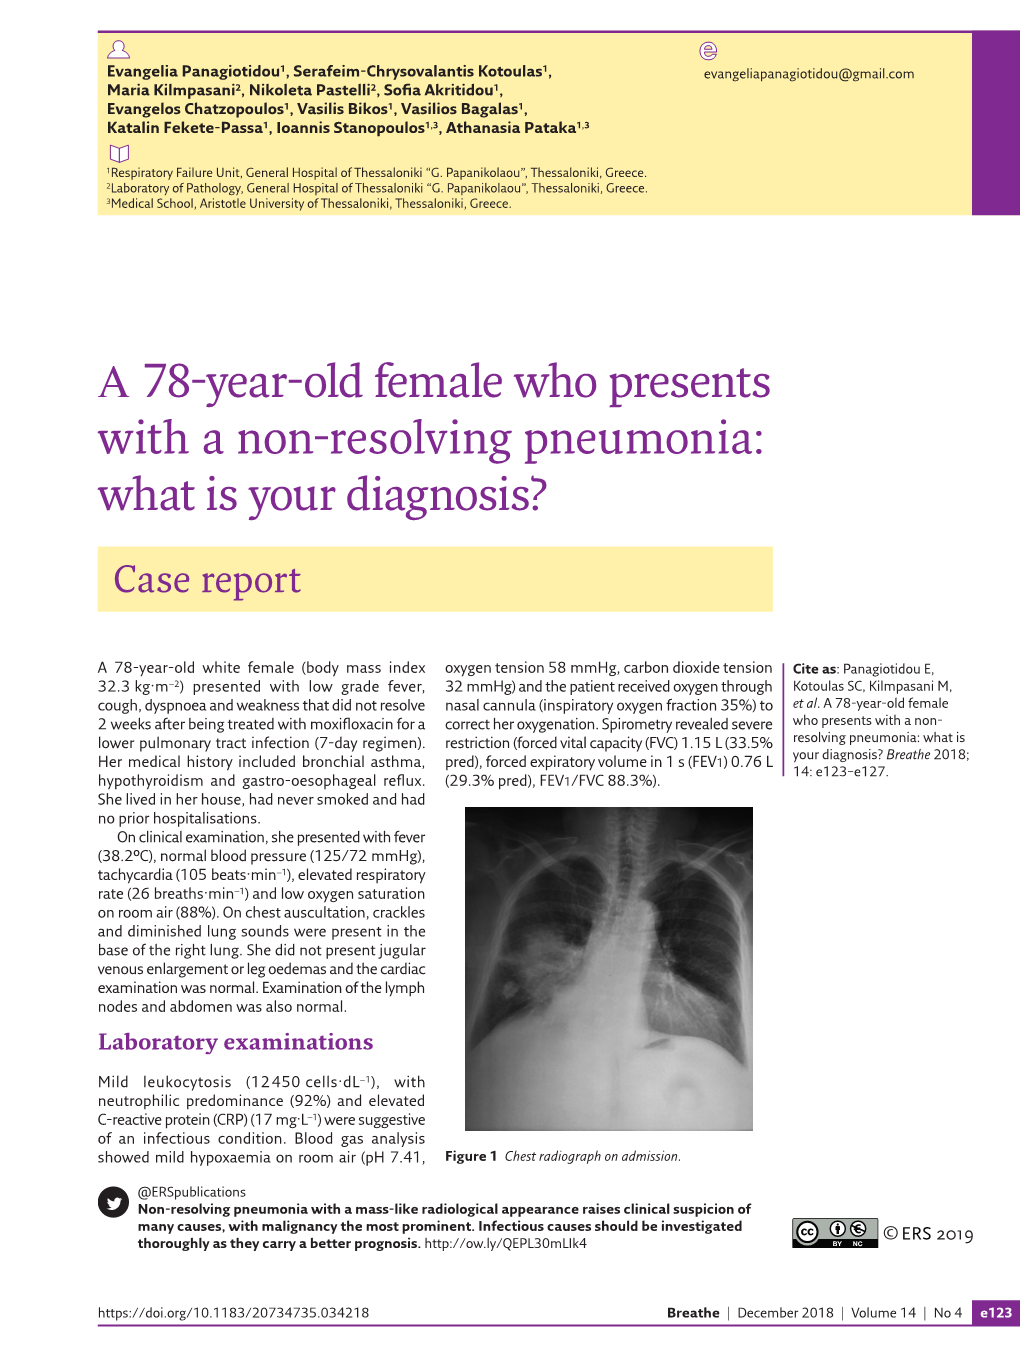 Α 78-Year-Old Female Who Presents with a Non-Resolving Pneumonia: What Is Your Diagnosis?